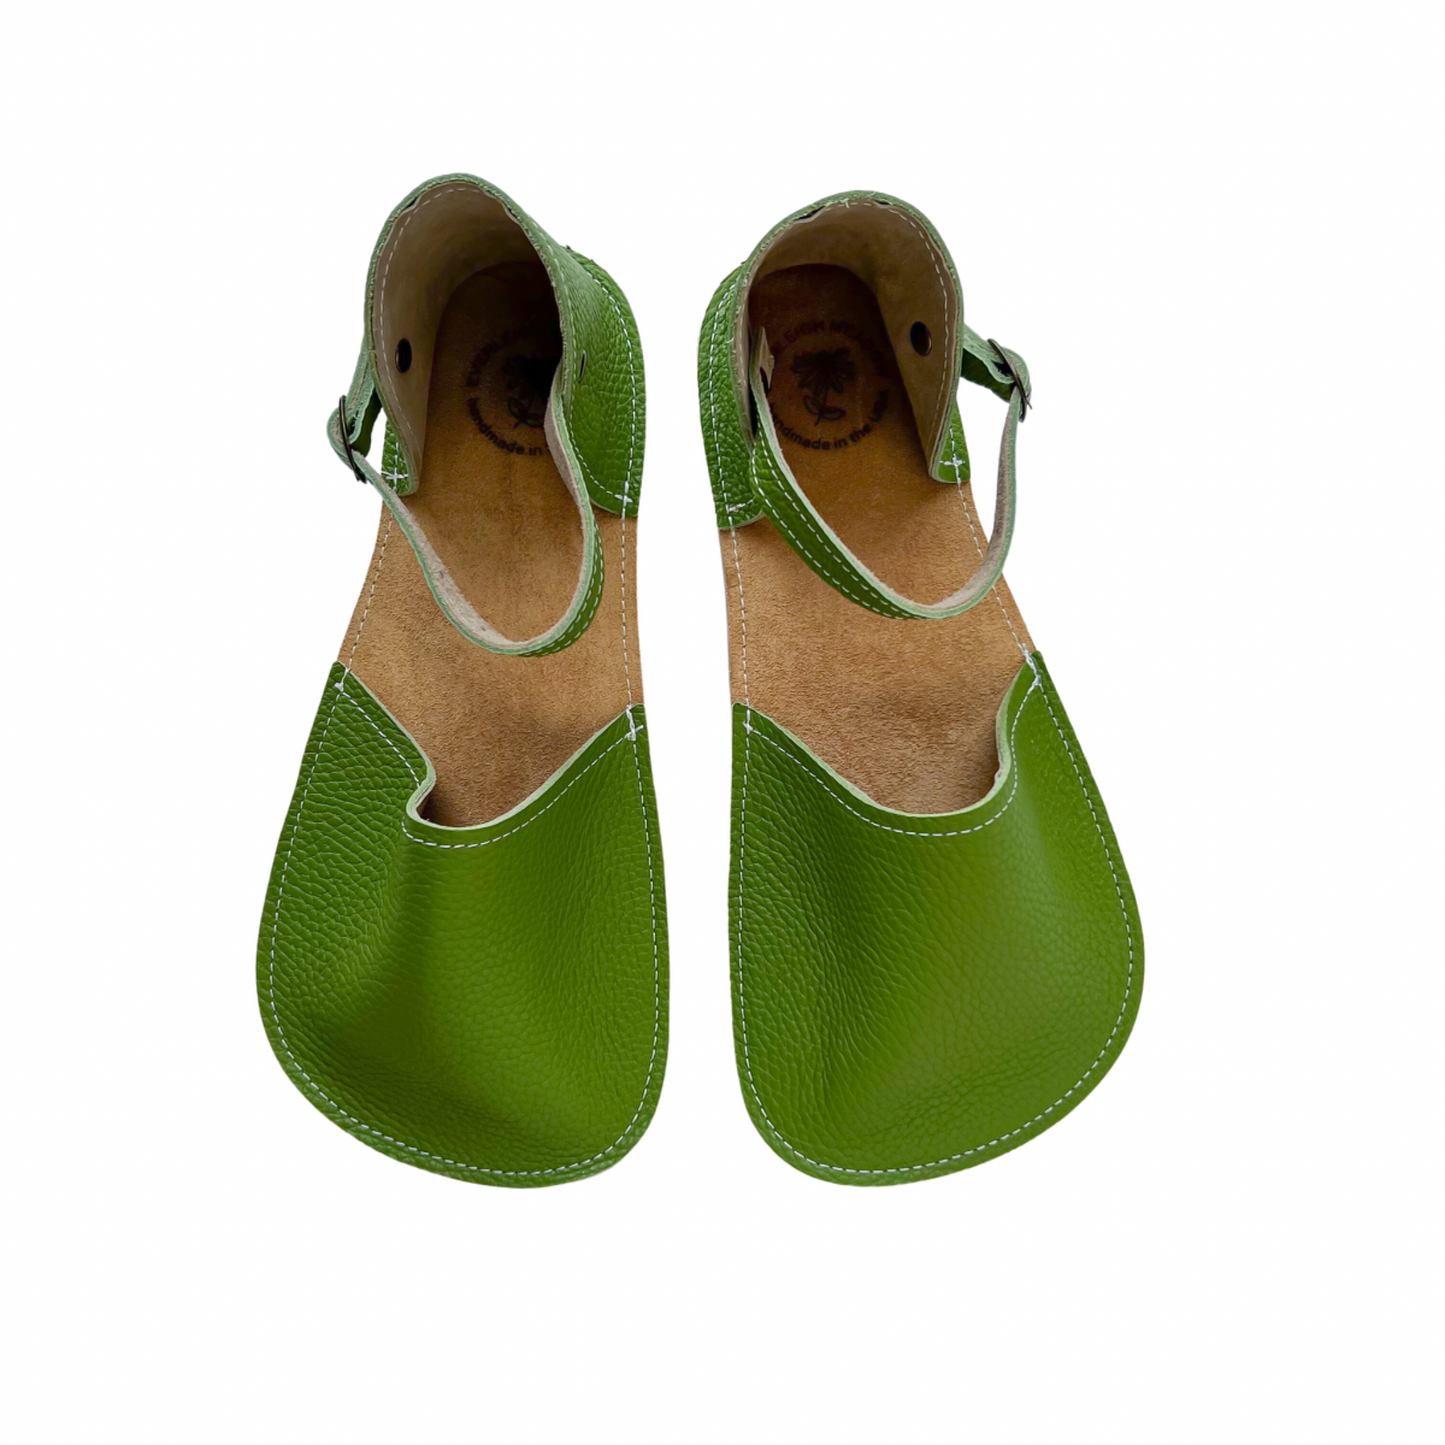 Explorer Mama Sandals - Solids